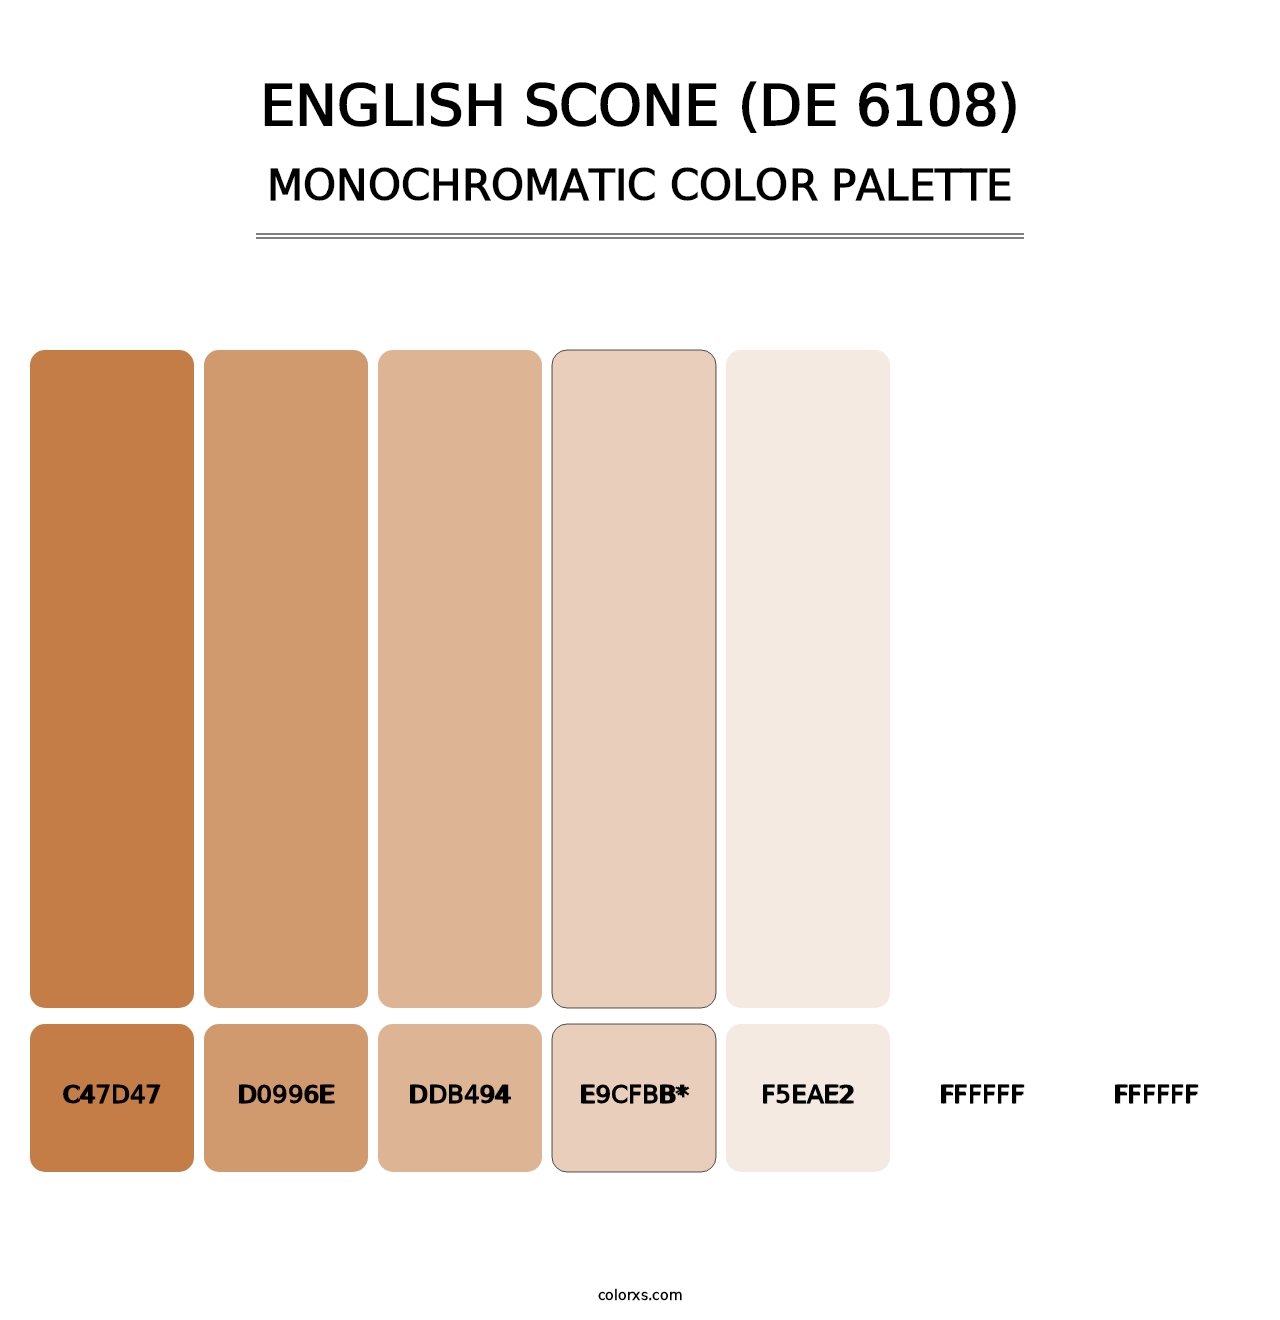 English Scone (DE 6108) - Monochromatic Color Palette